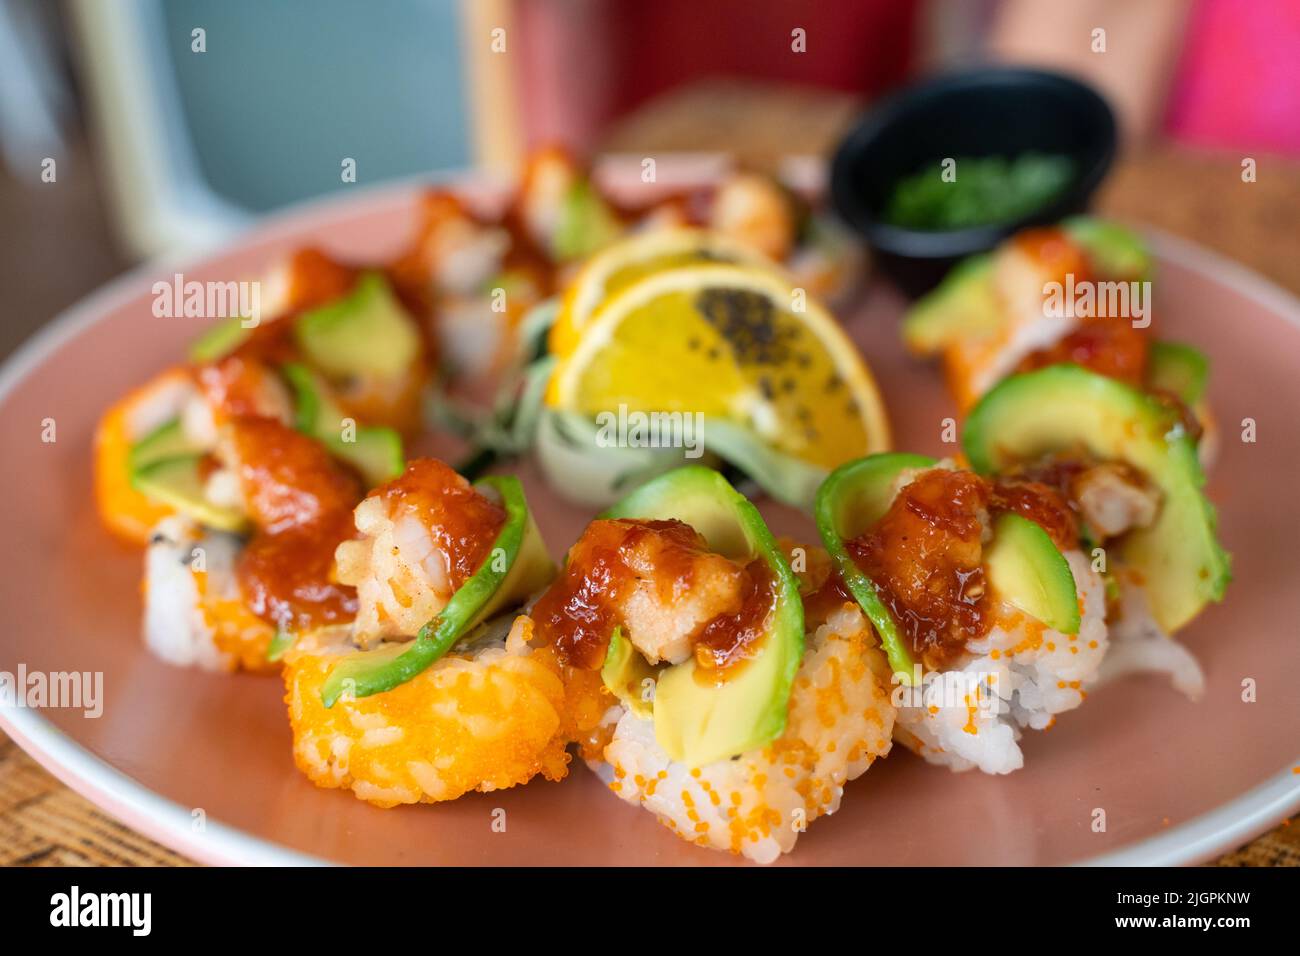 Assiette à sushis californiens avec avocat, crevettes et sauce épicée sur le dessus. Restaurant gastronomique concept Banque D'Images